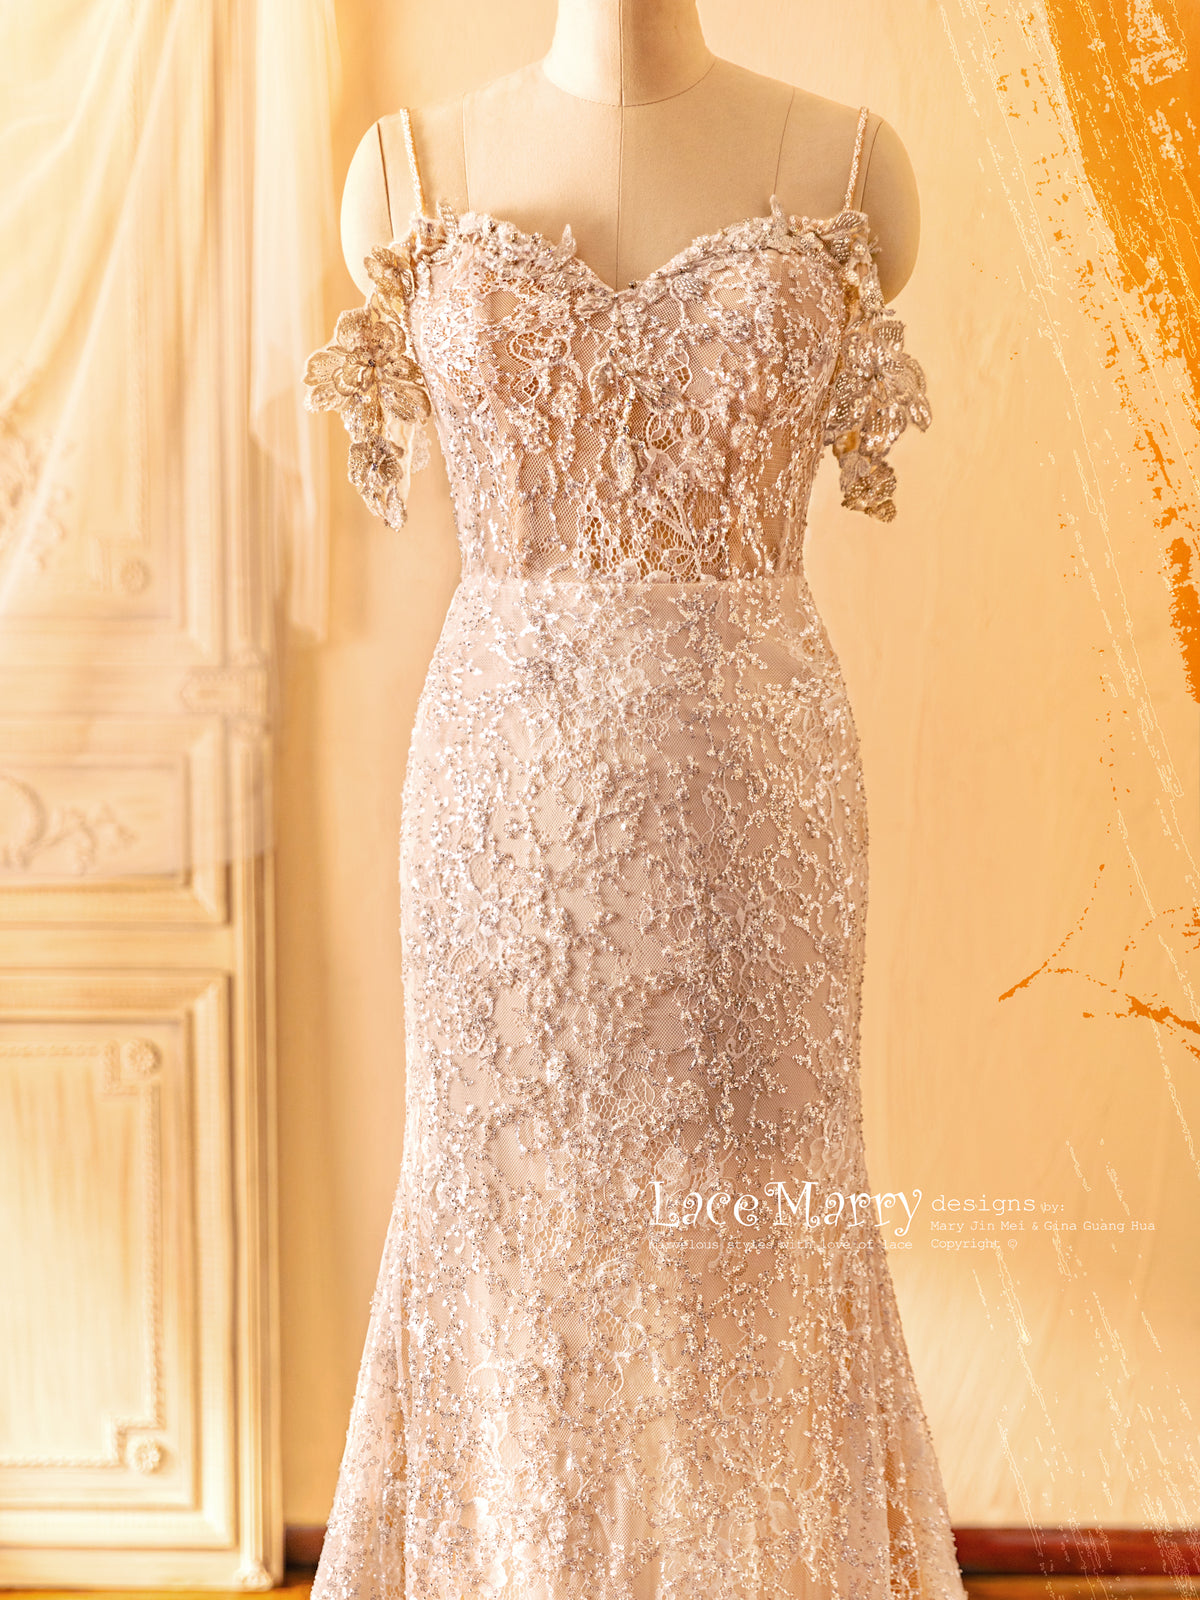 Glitter Wedding Dress with Off Shoulder Design